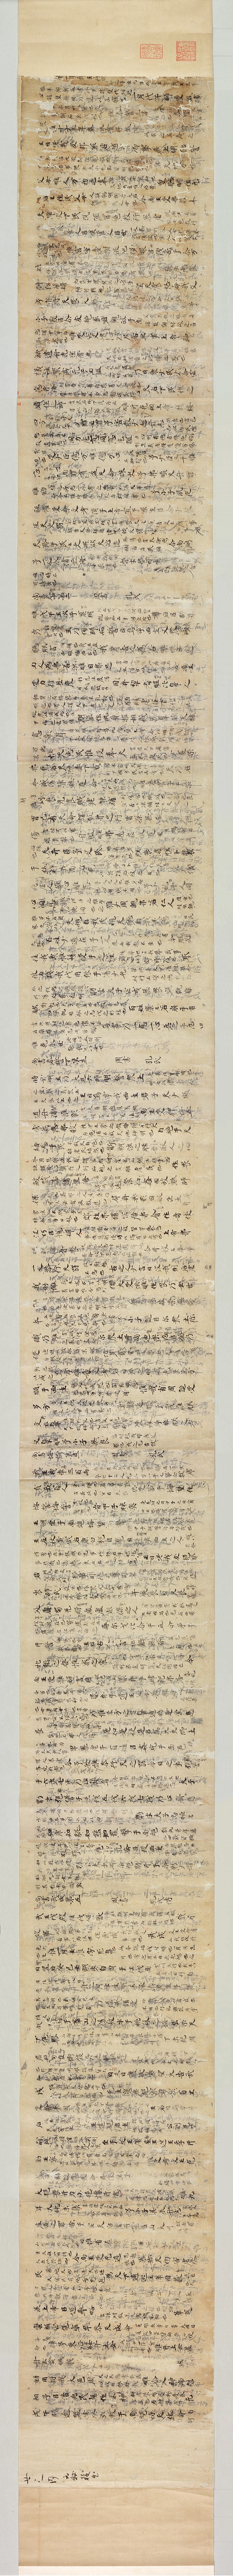 唐 古文尚书第六卷39x东京国立博物馆